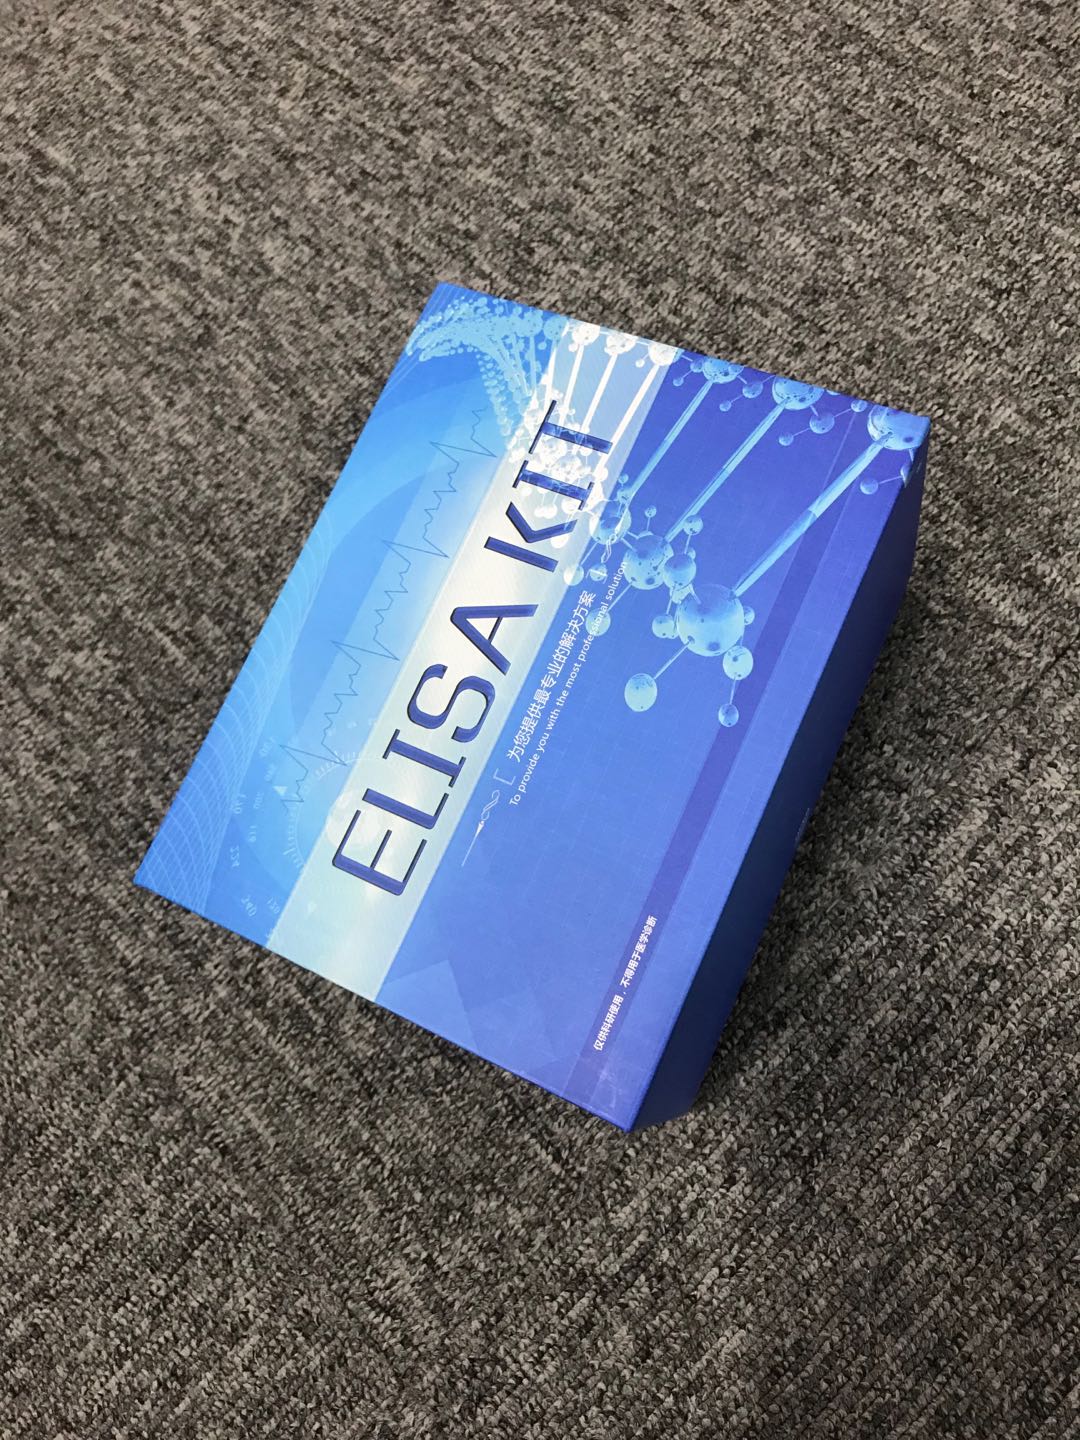 大鼠孕酮（PROG）ELISA试剂盒,PROG